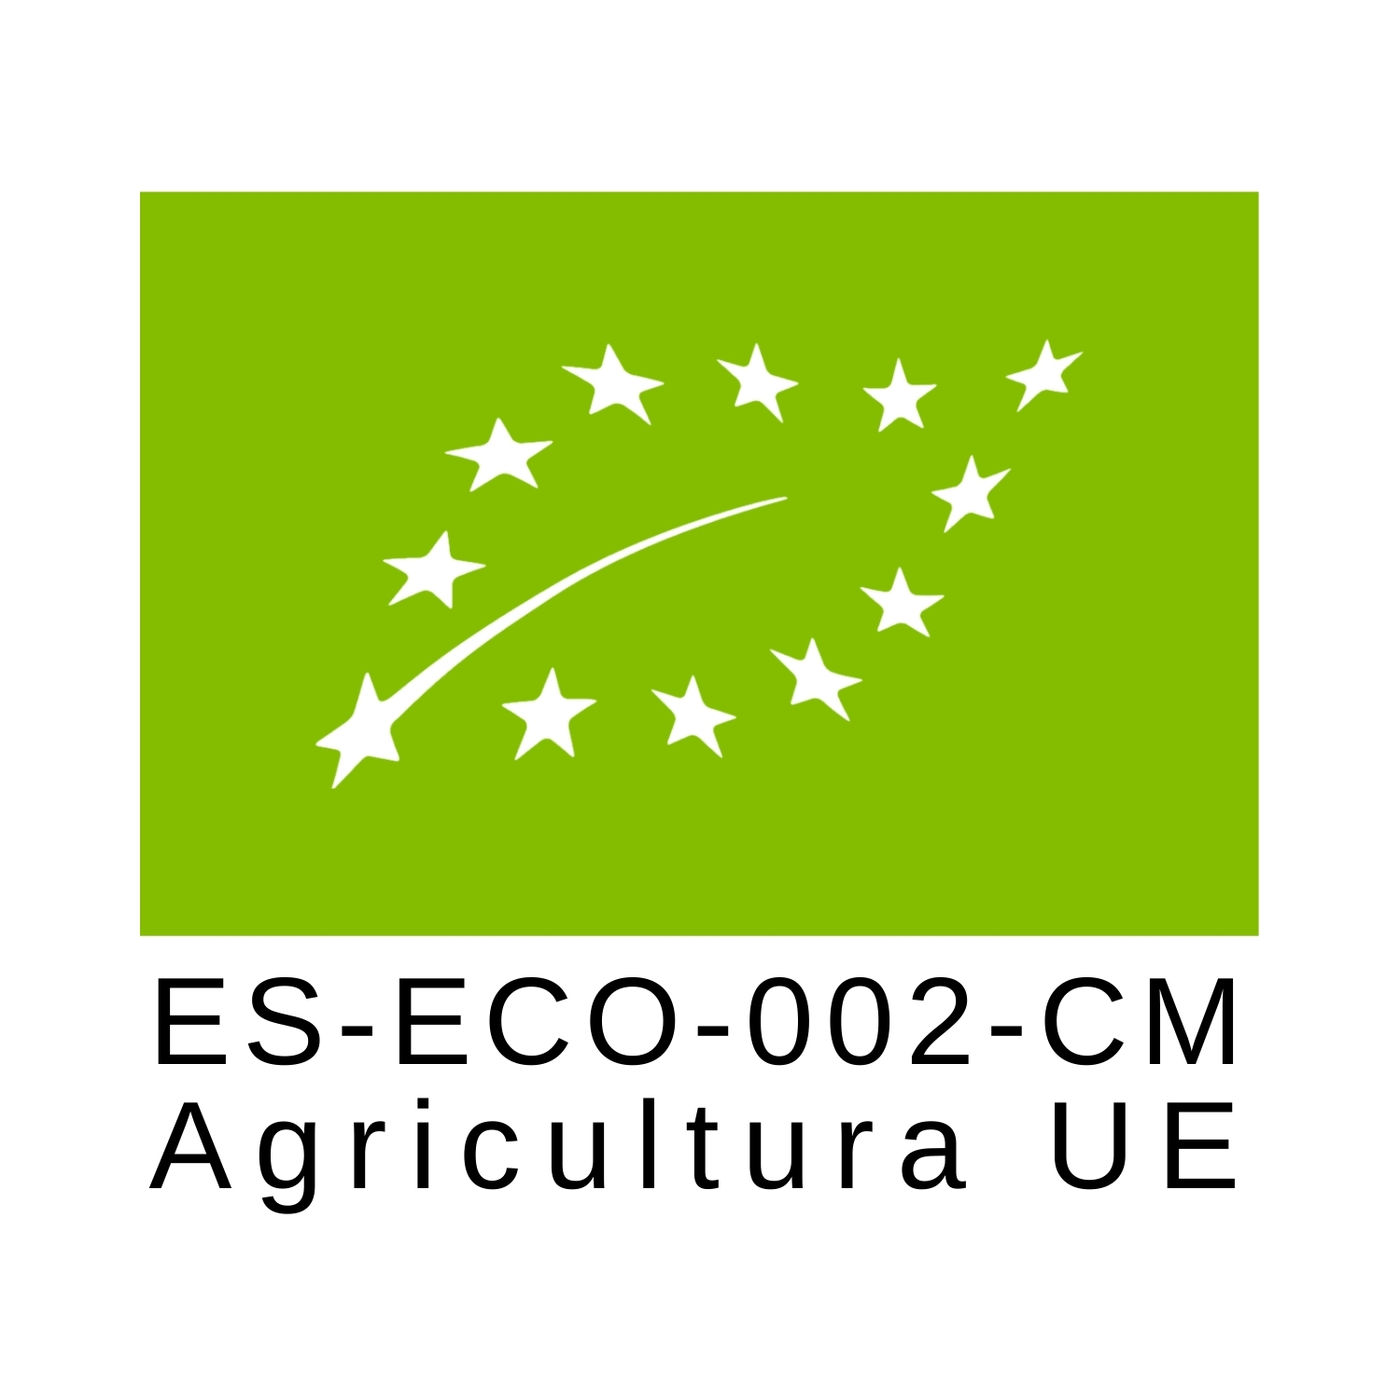 ES-ECO-002-CM Agricultural UE Certification Logo